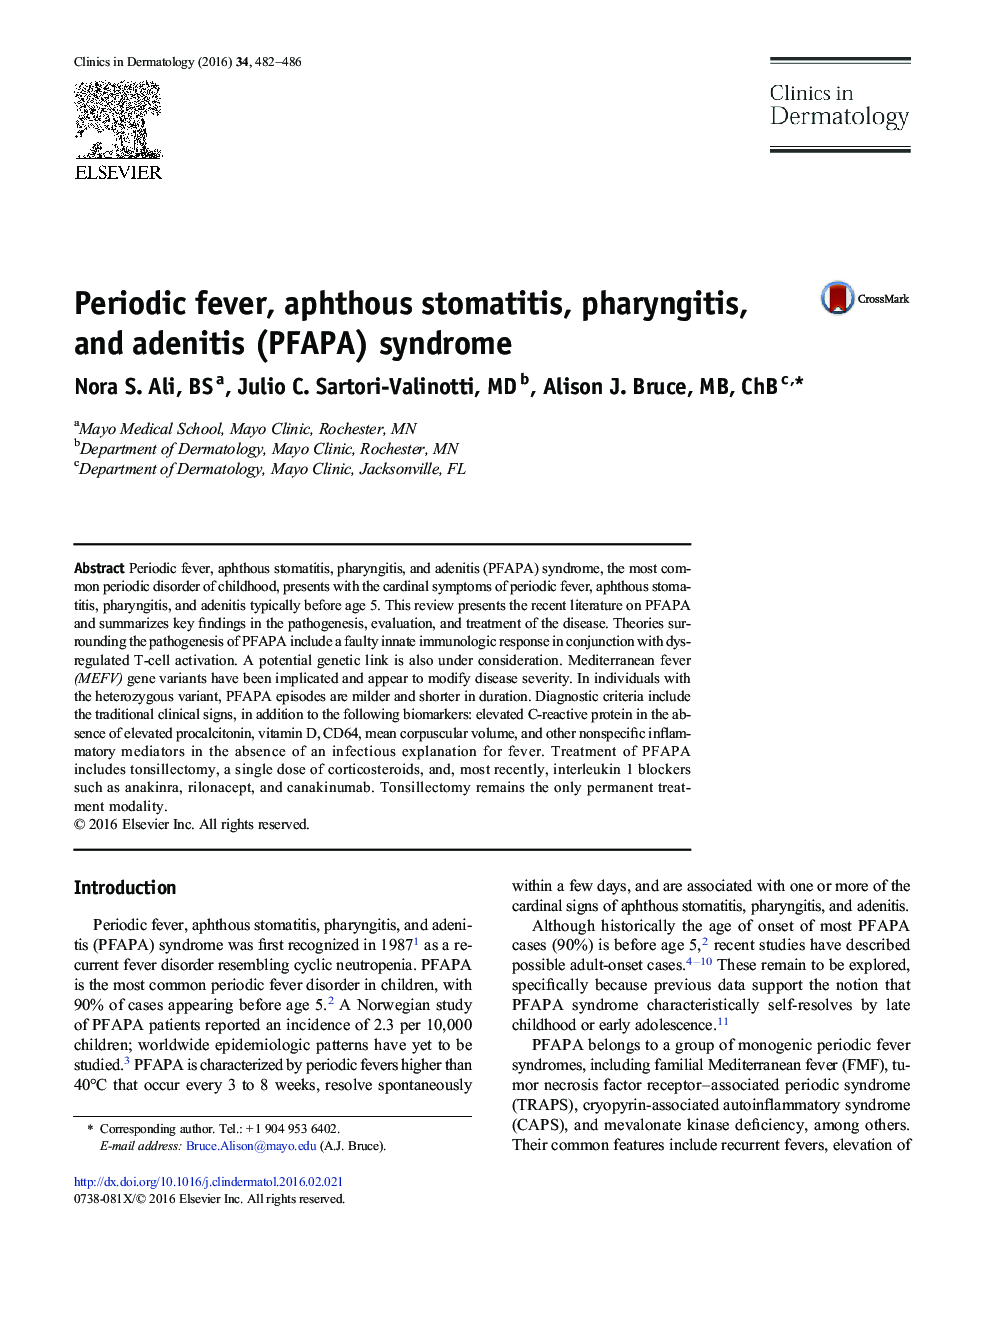 Periodic fever, aphthous stomatitis, pharyngitis, and adenitis (PFAPA) syndrome